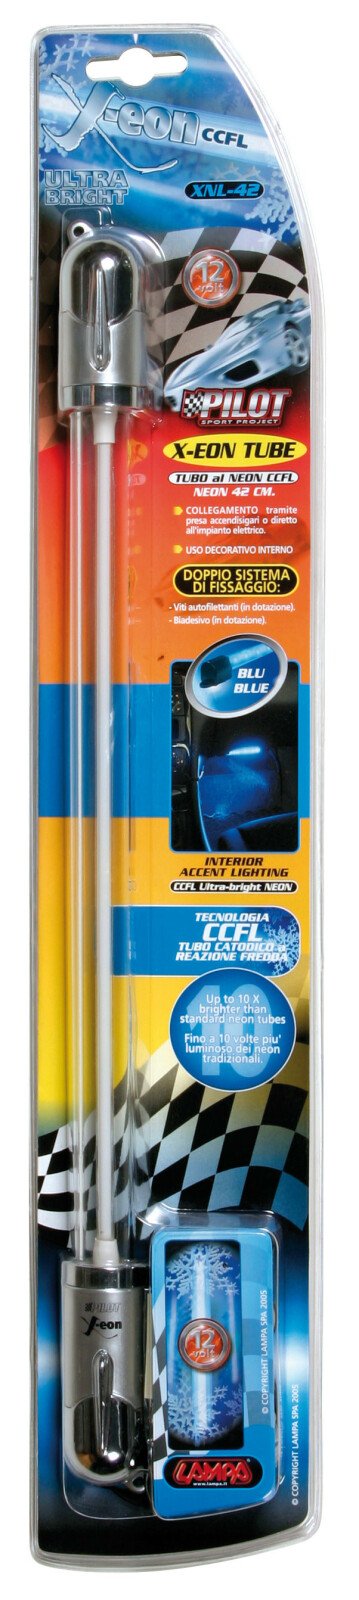 X-Eon színes neon 42cm 12V - Kék thumb